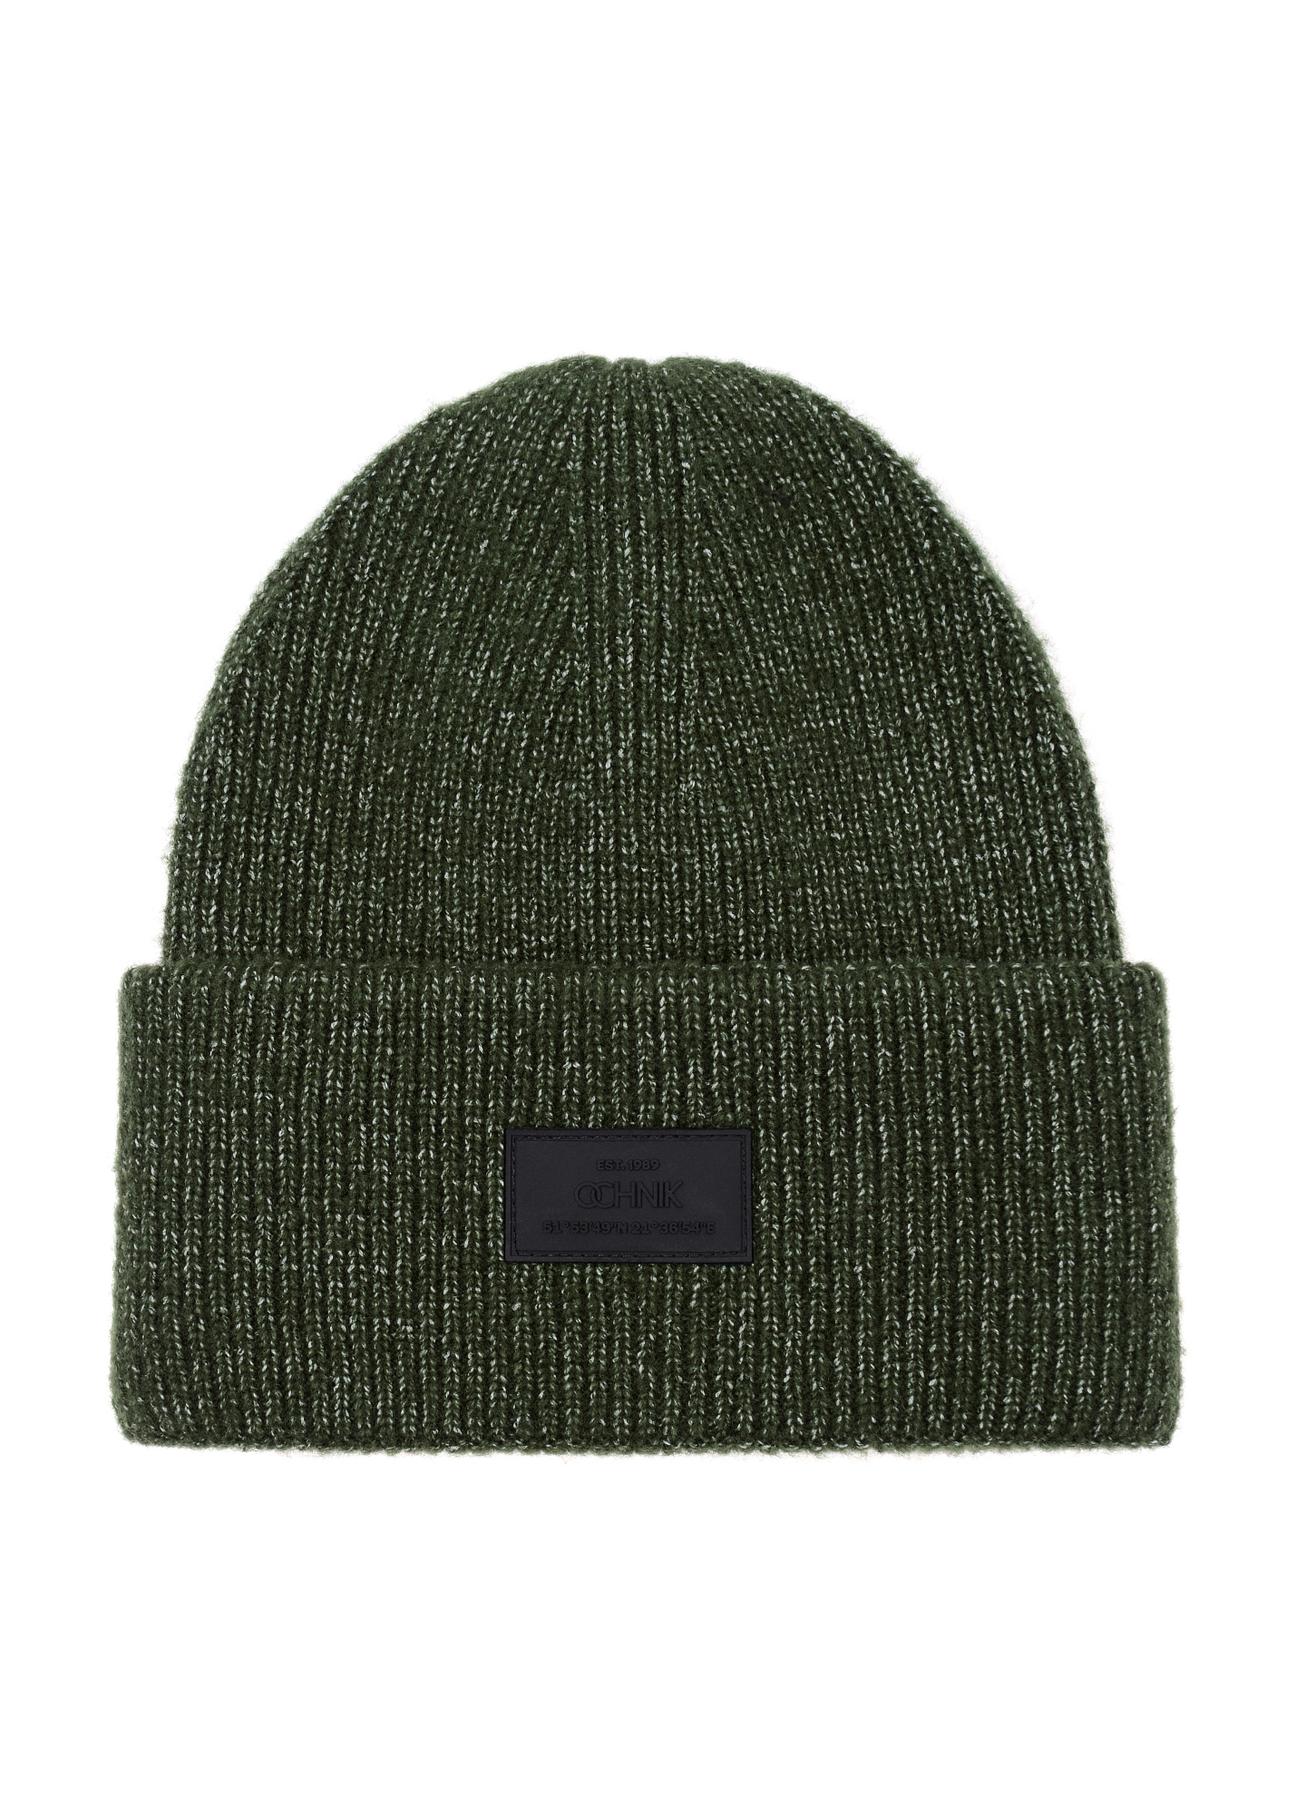 Zielona czapka zimowa męska CZAMT-0070-54(Z23)